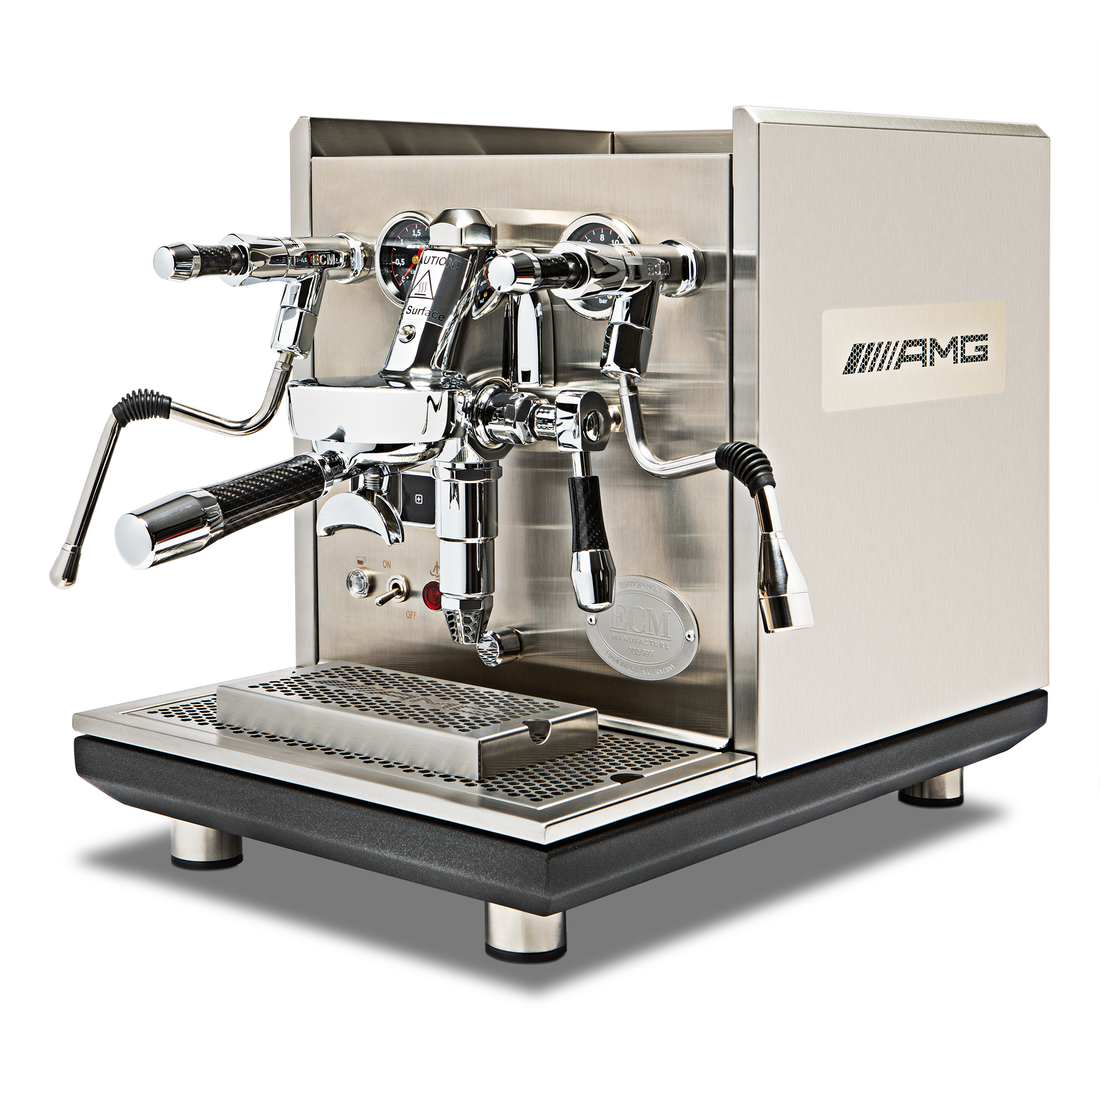 ECM Synchronika Espresso Machine - AMG Limited Edition